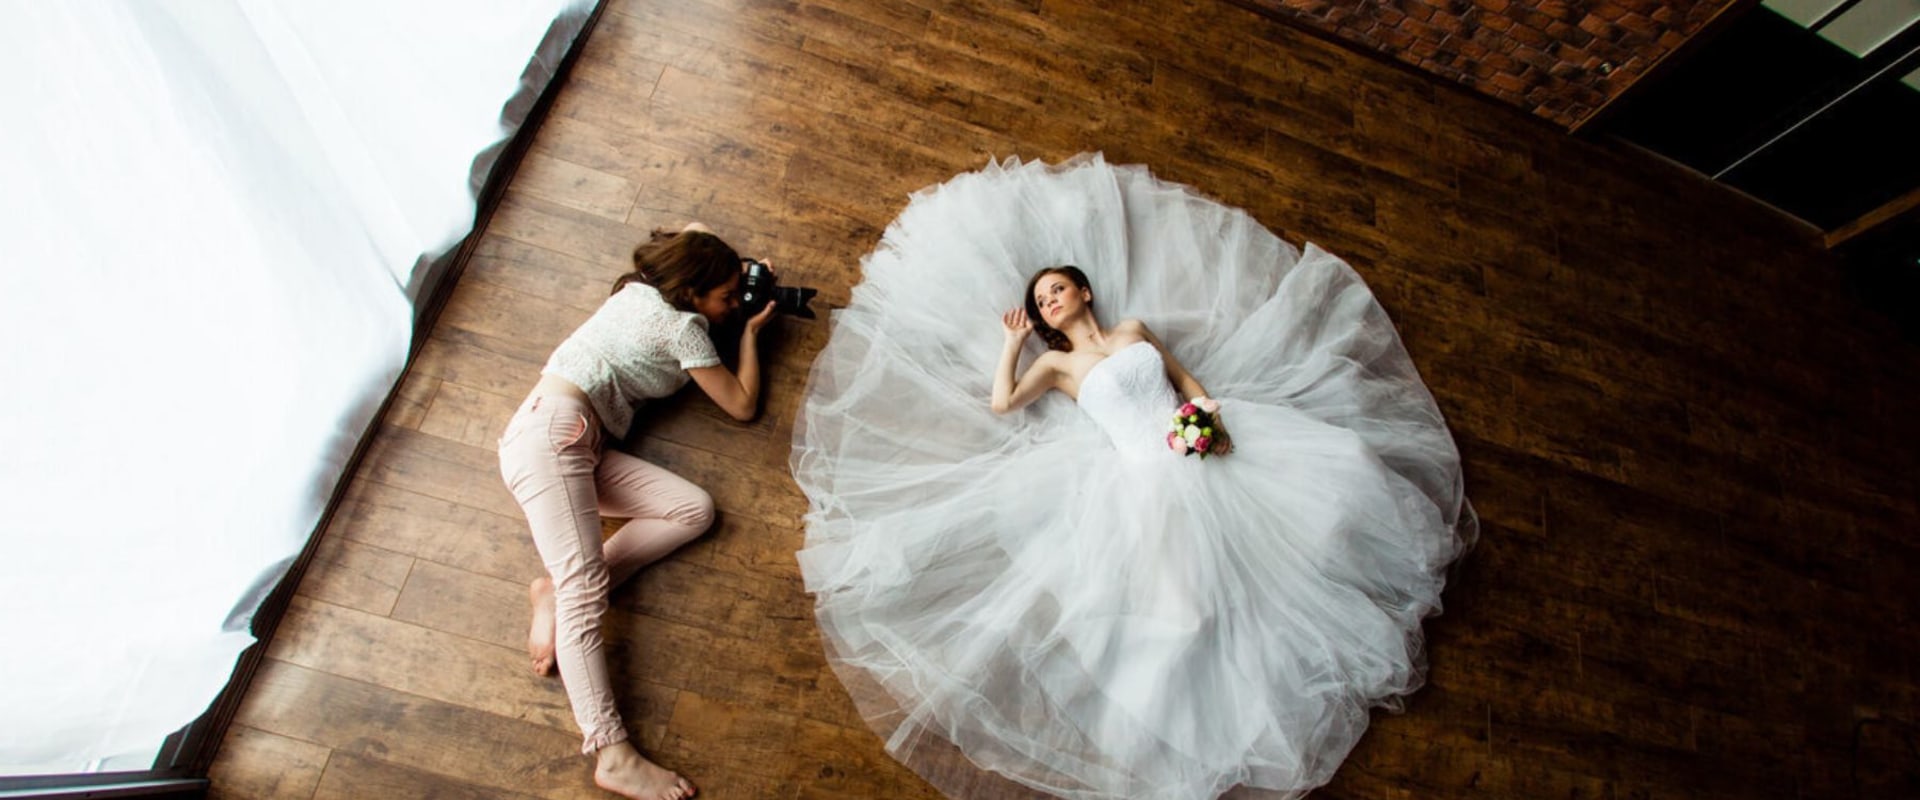 Fotografía artística de bodas: explorando el estilo